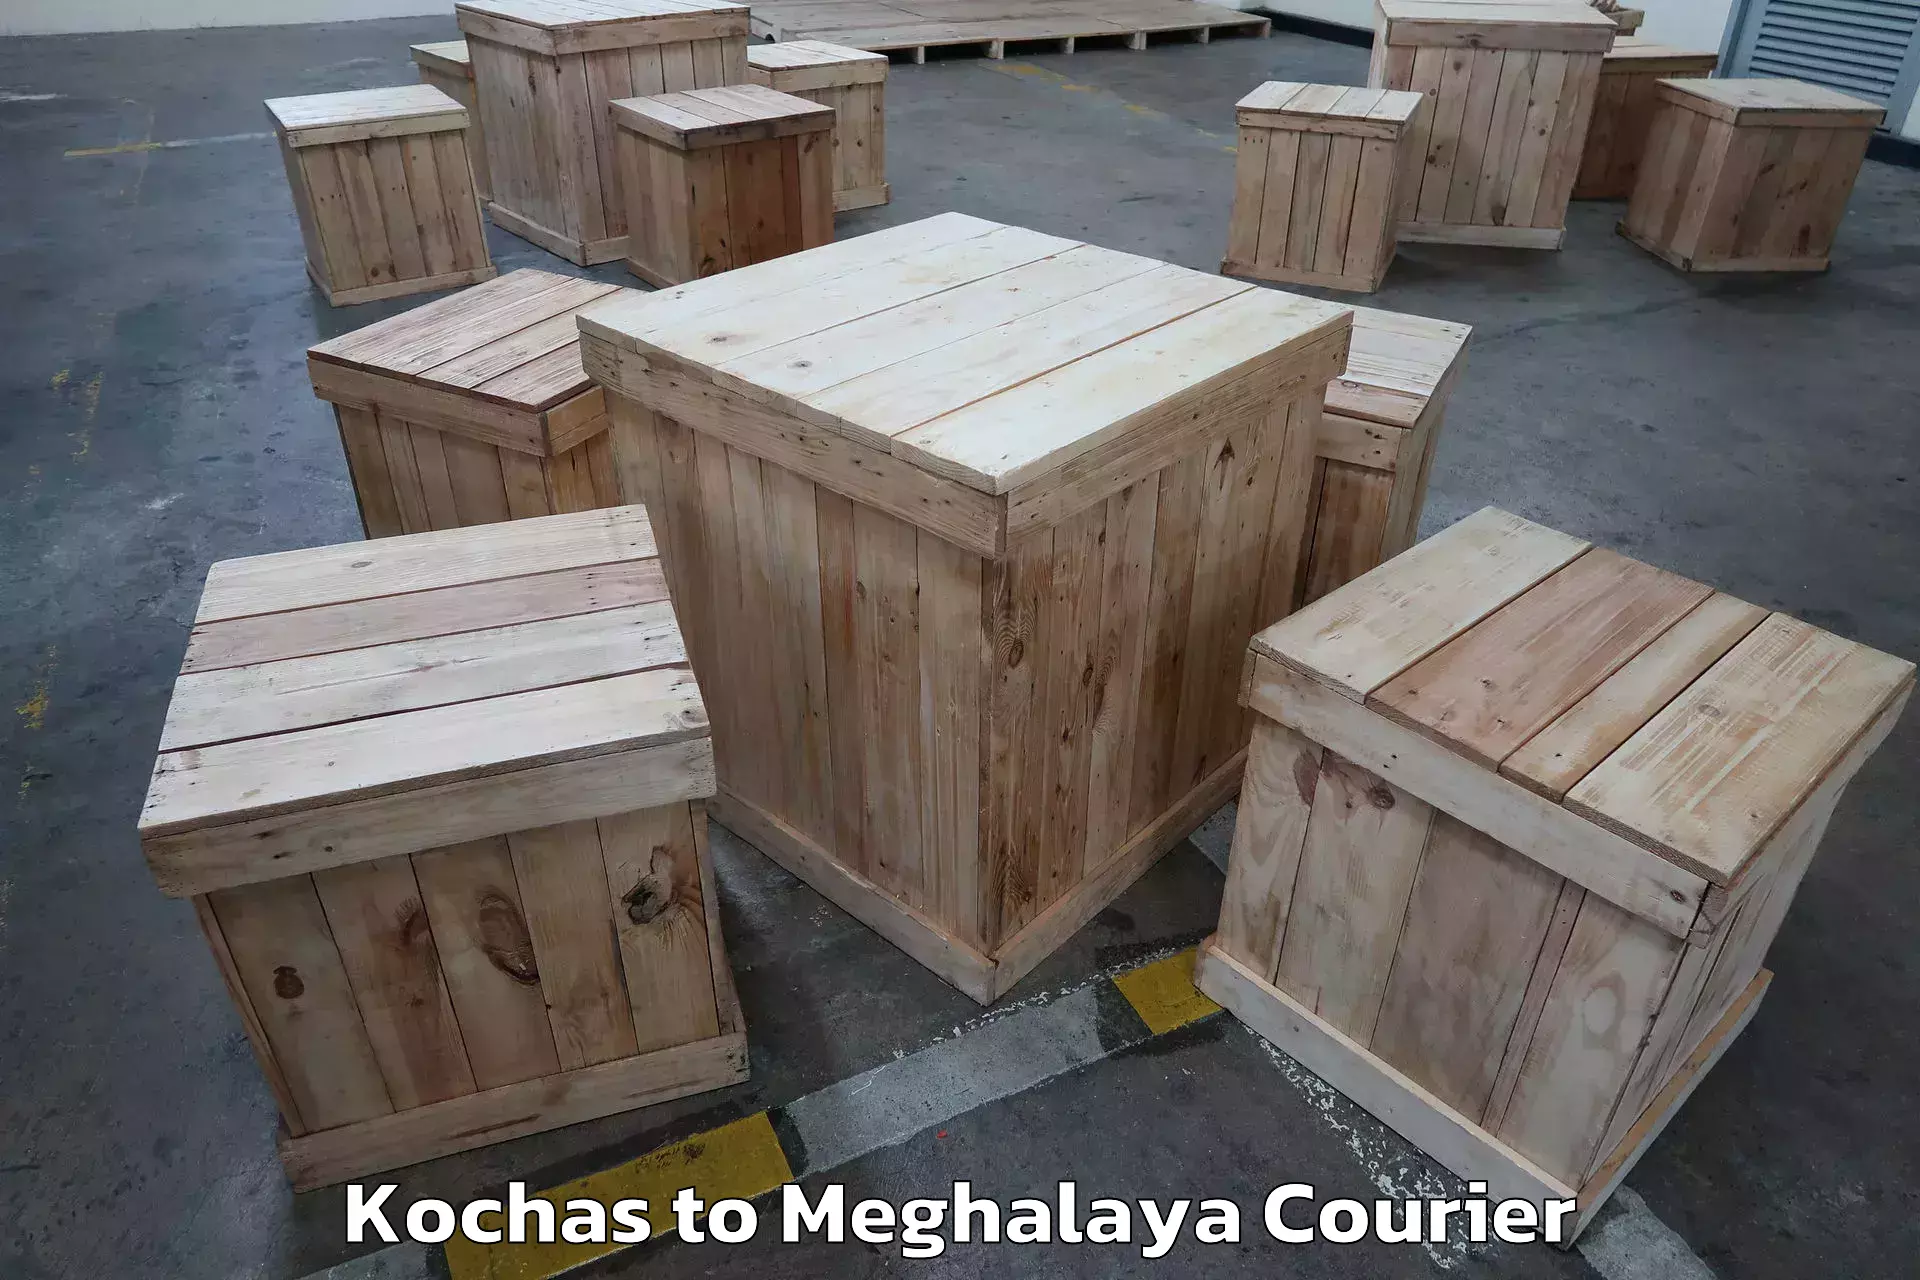 Efficient moving company Kochas to Garobadha